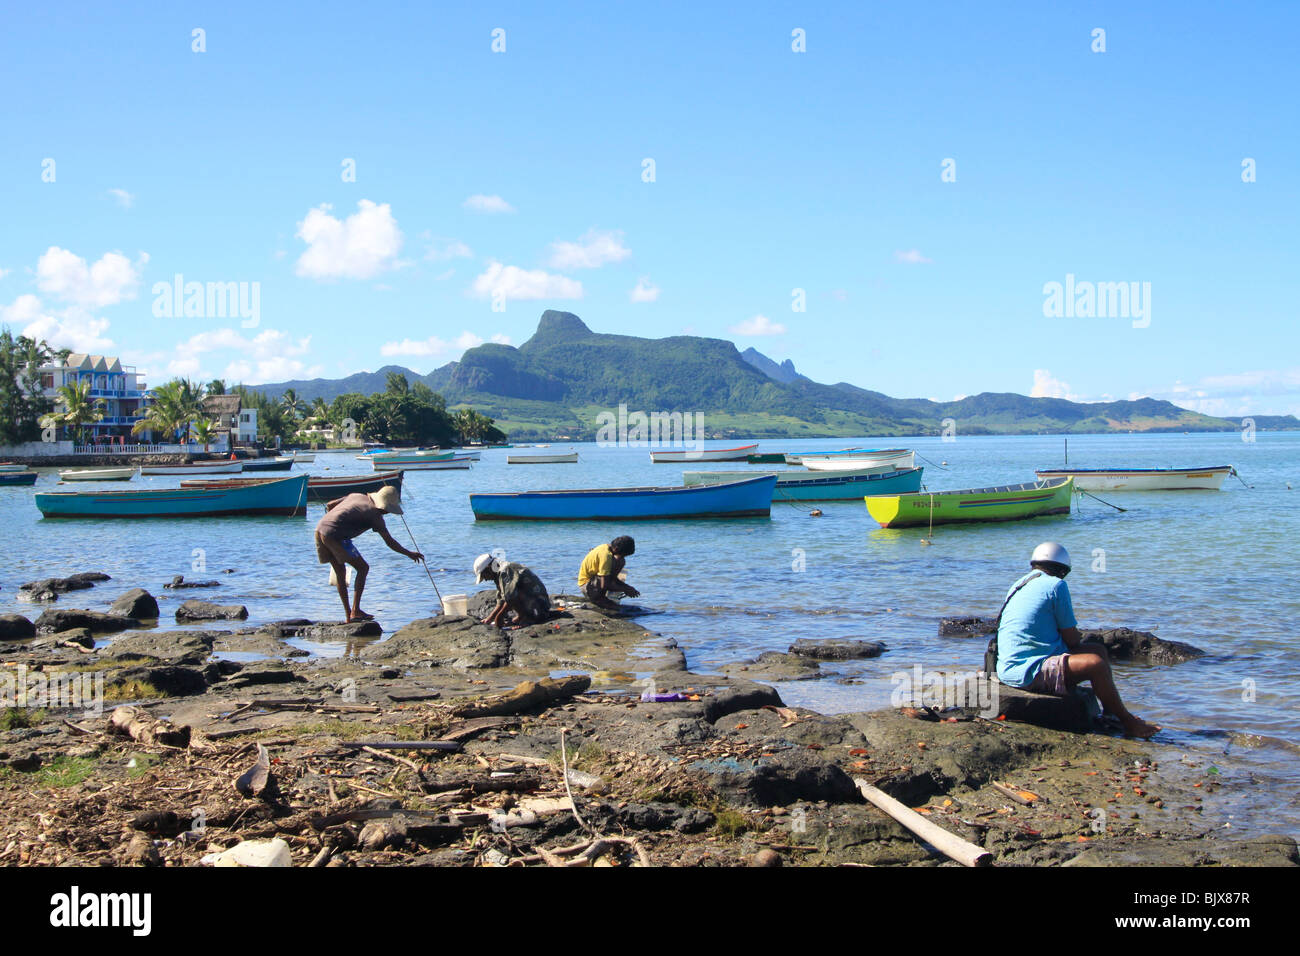 La région côtière, Mahebourg, au sud-est de l'Ile Maurice, petit bateau nommé pirogue utilisé par les pêcheurs pour y vivre. Bien visité Banque D'Images